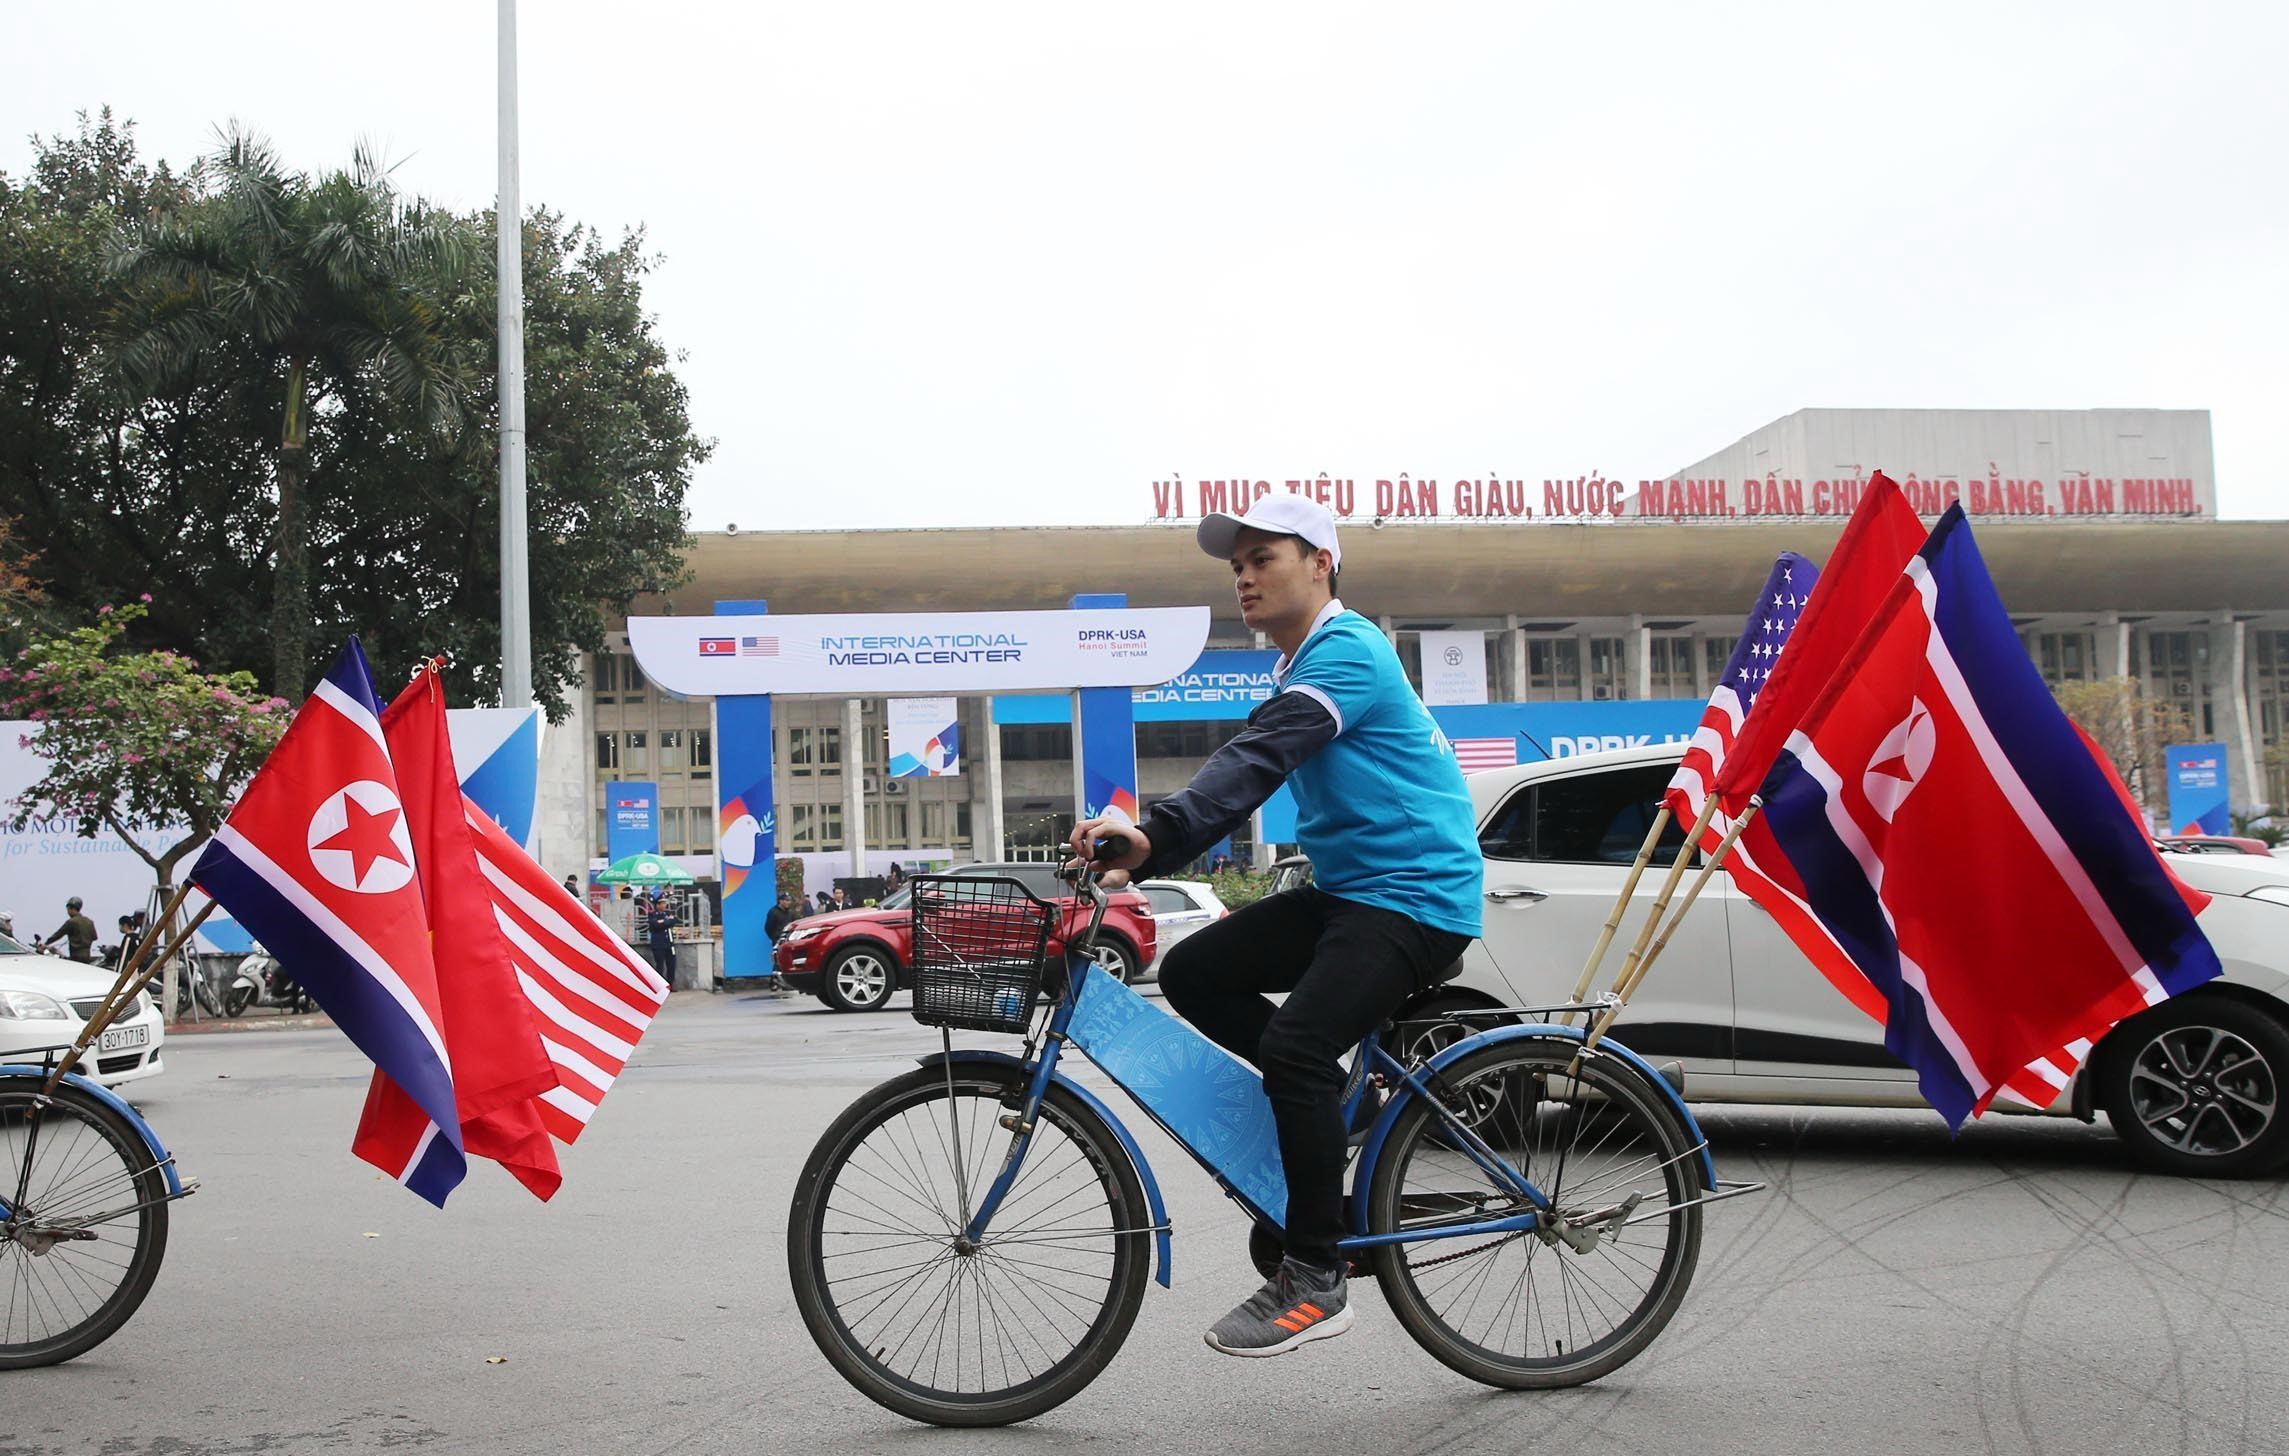 Thanh niên Việt Nam diễn hành với quốc kỳ Việt Nam và hai nước Hoa Kỳ, Triều Tiên trên đường Trần Hưng Đạo, Hoàn Kiếm. (Ảnh: Lâm Khánh/TTXVN)